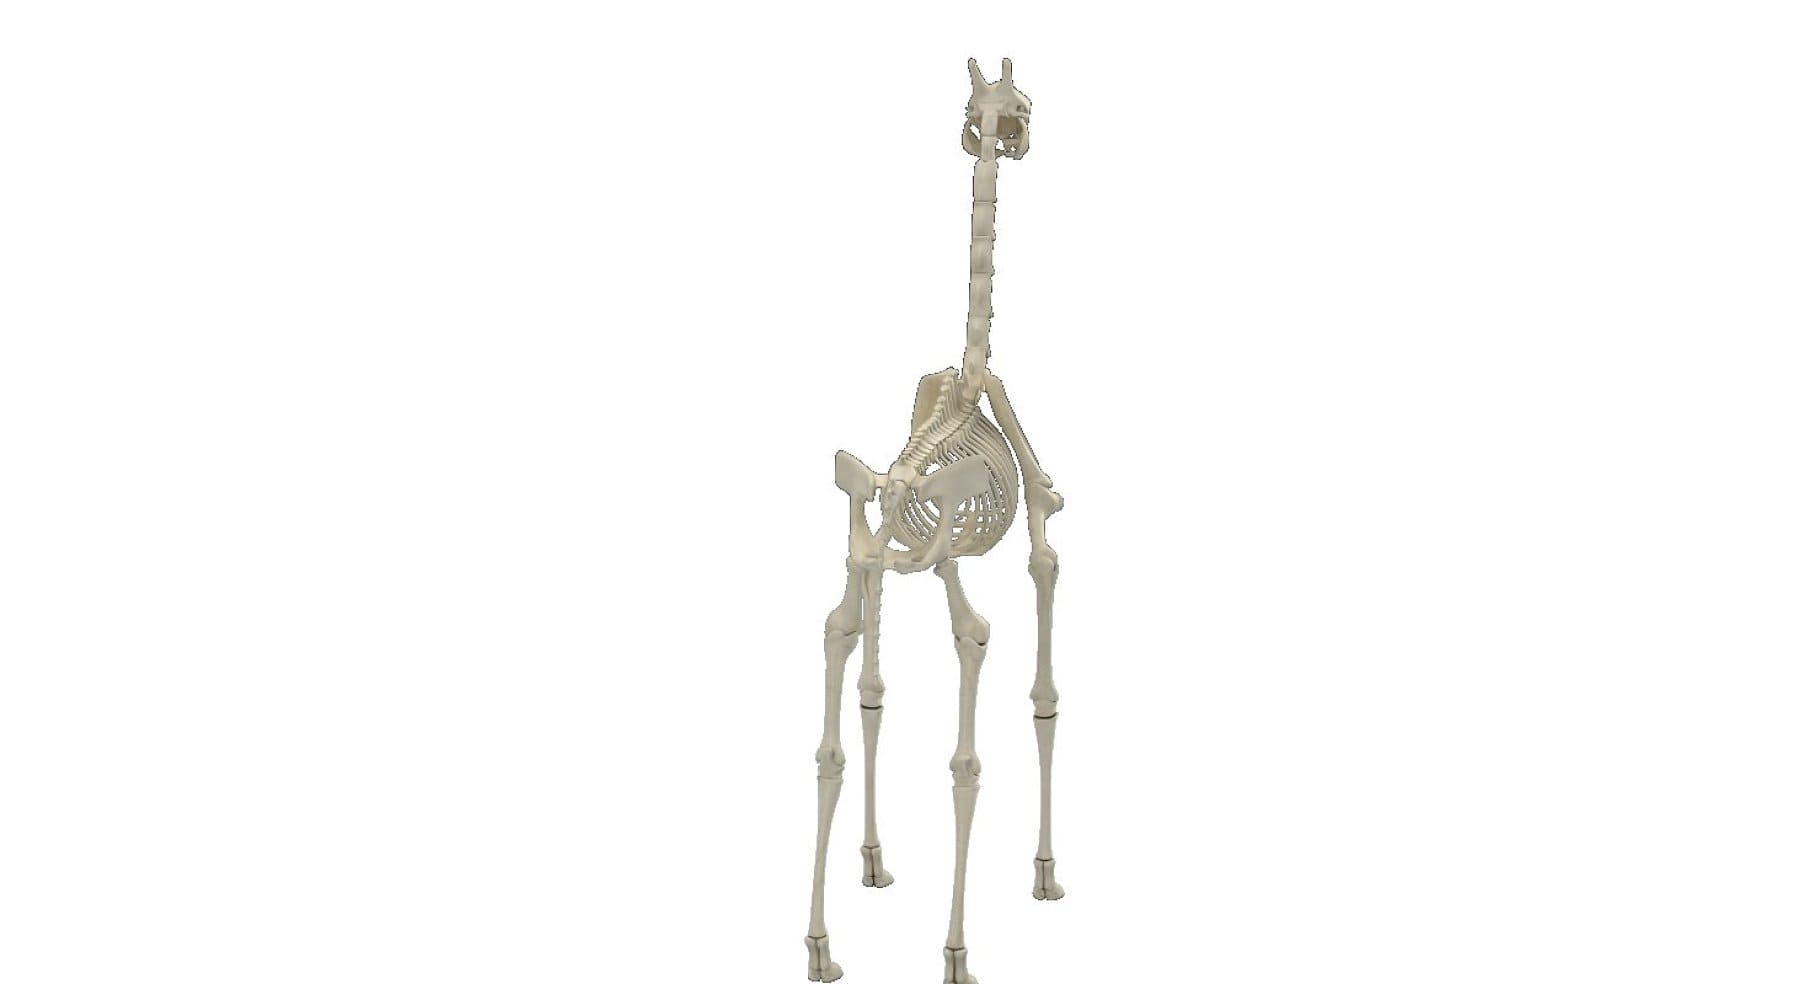 Image of a bone-colored giraffe's mallards.